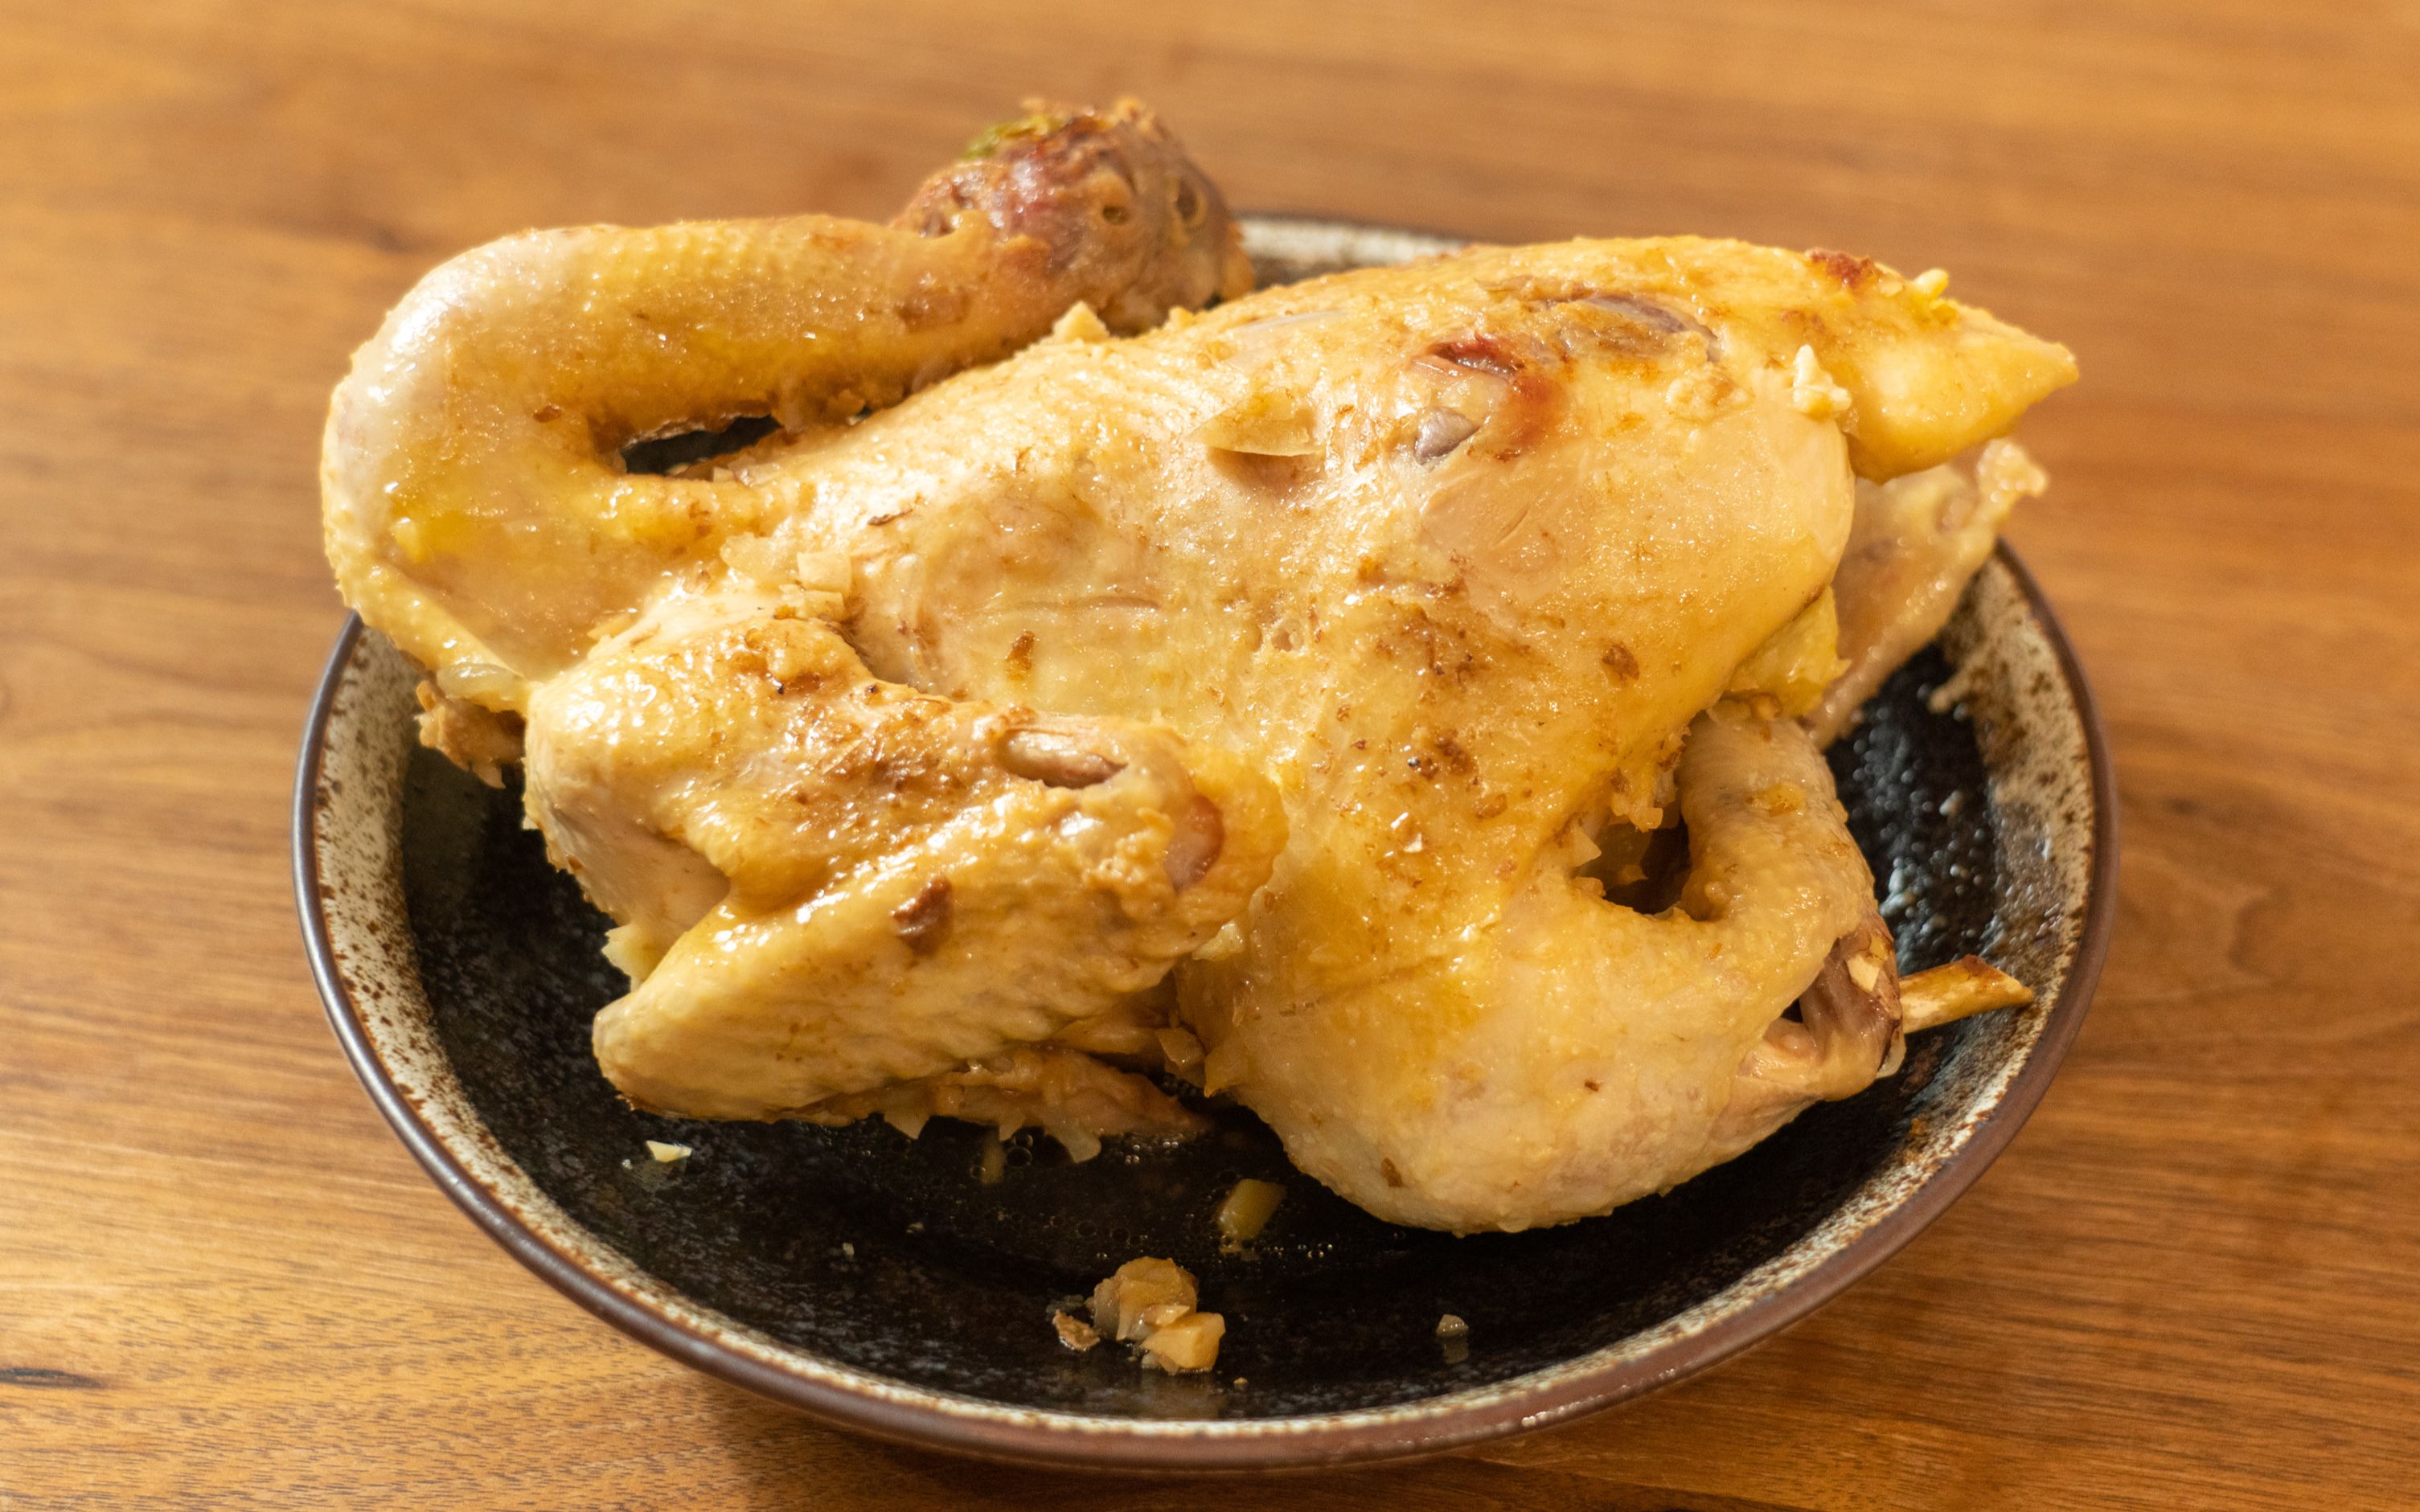 【雨杭叔叔】适合懒人的美味佳肴,做法简单,味道独特的沙姜焗鸡